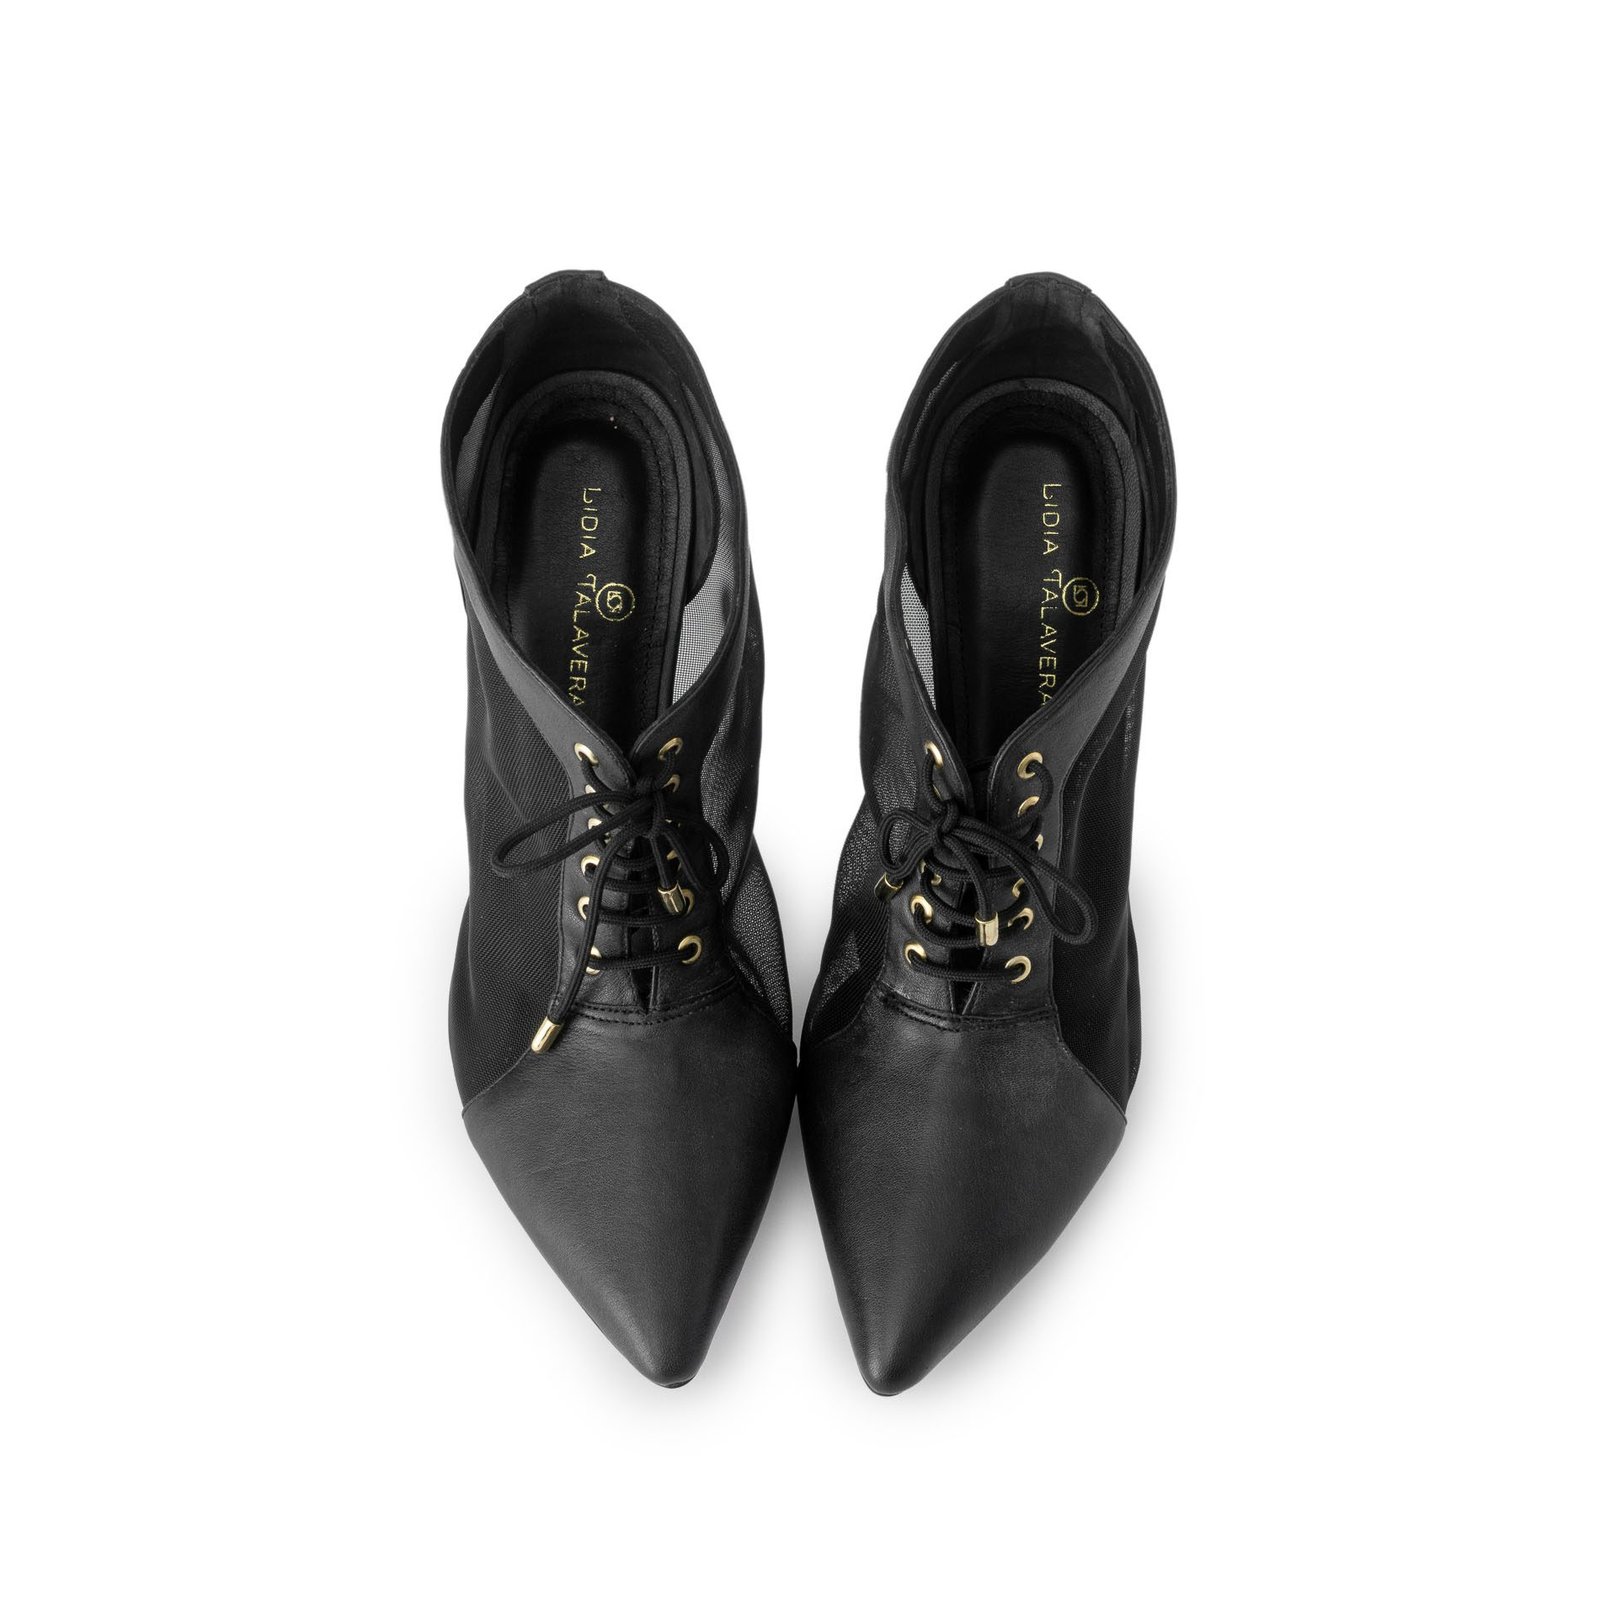 black booties with heel